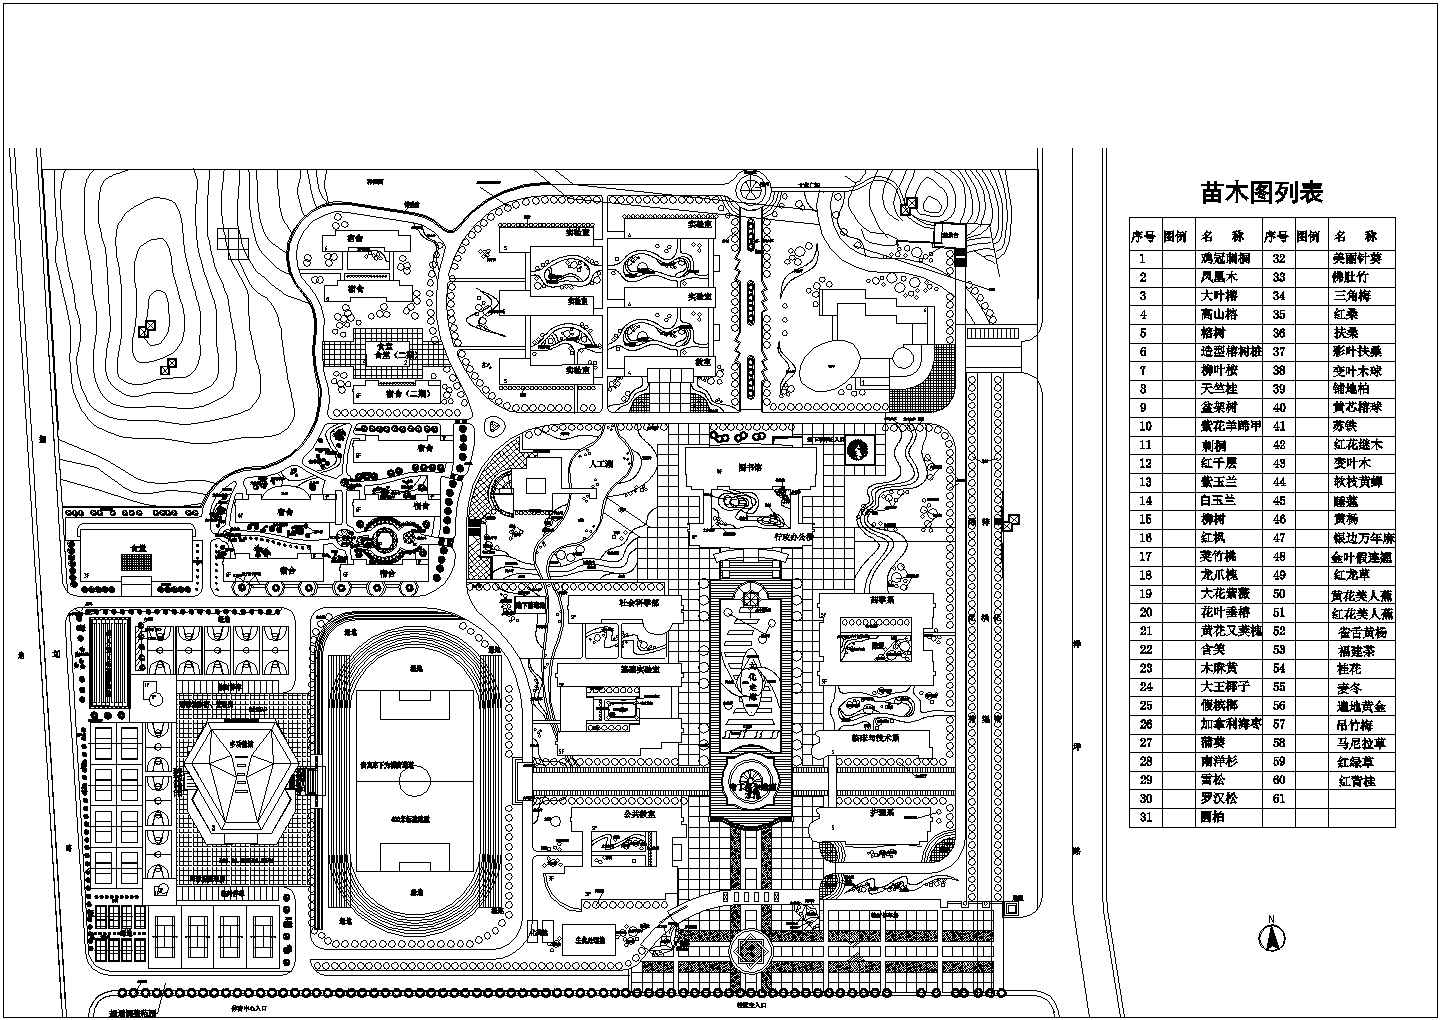 某学校CAD构造全套节点设计总体规划图